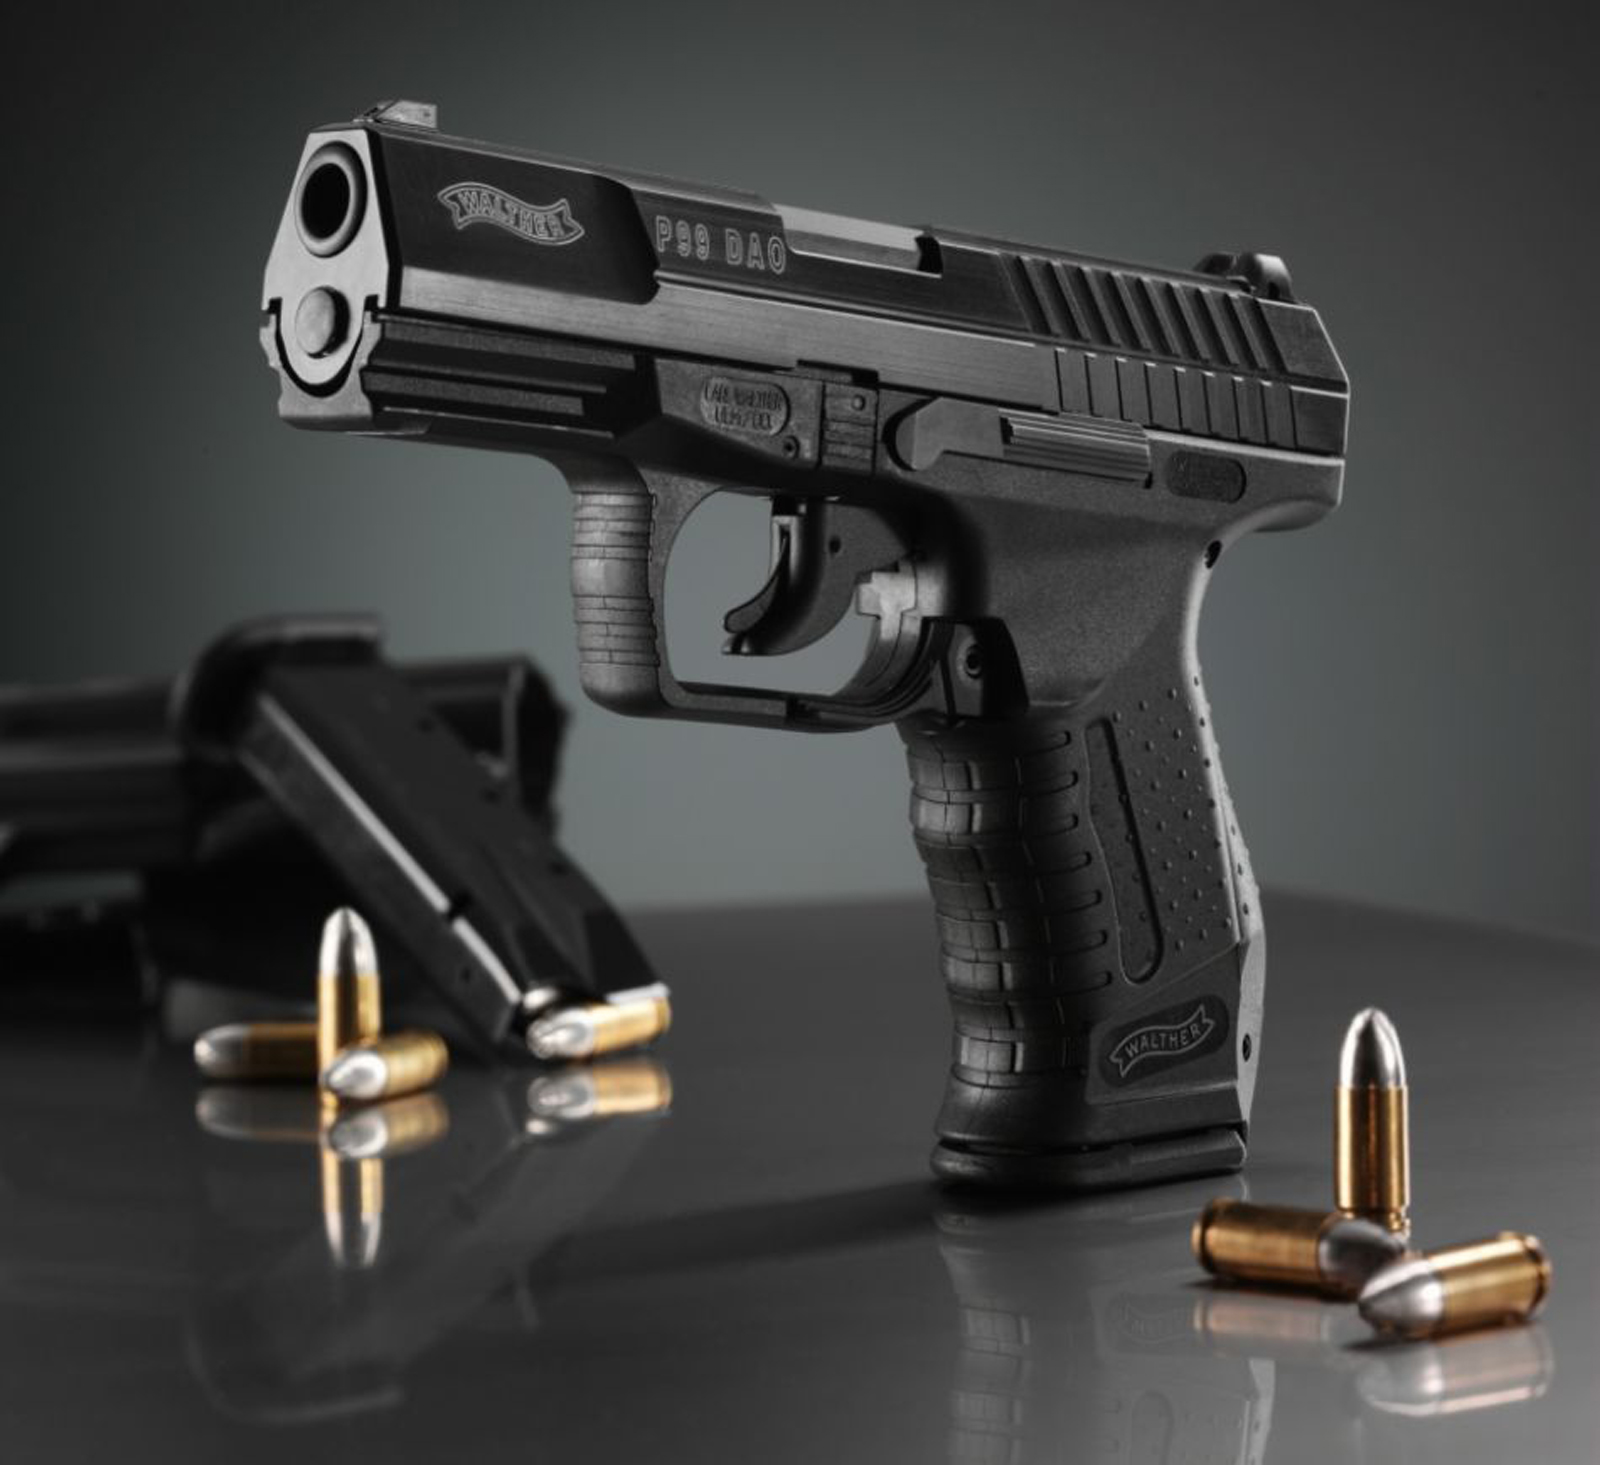 p99 pistol ammo